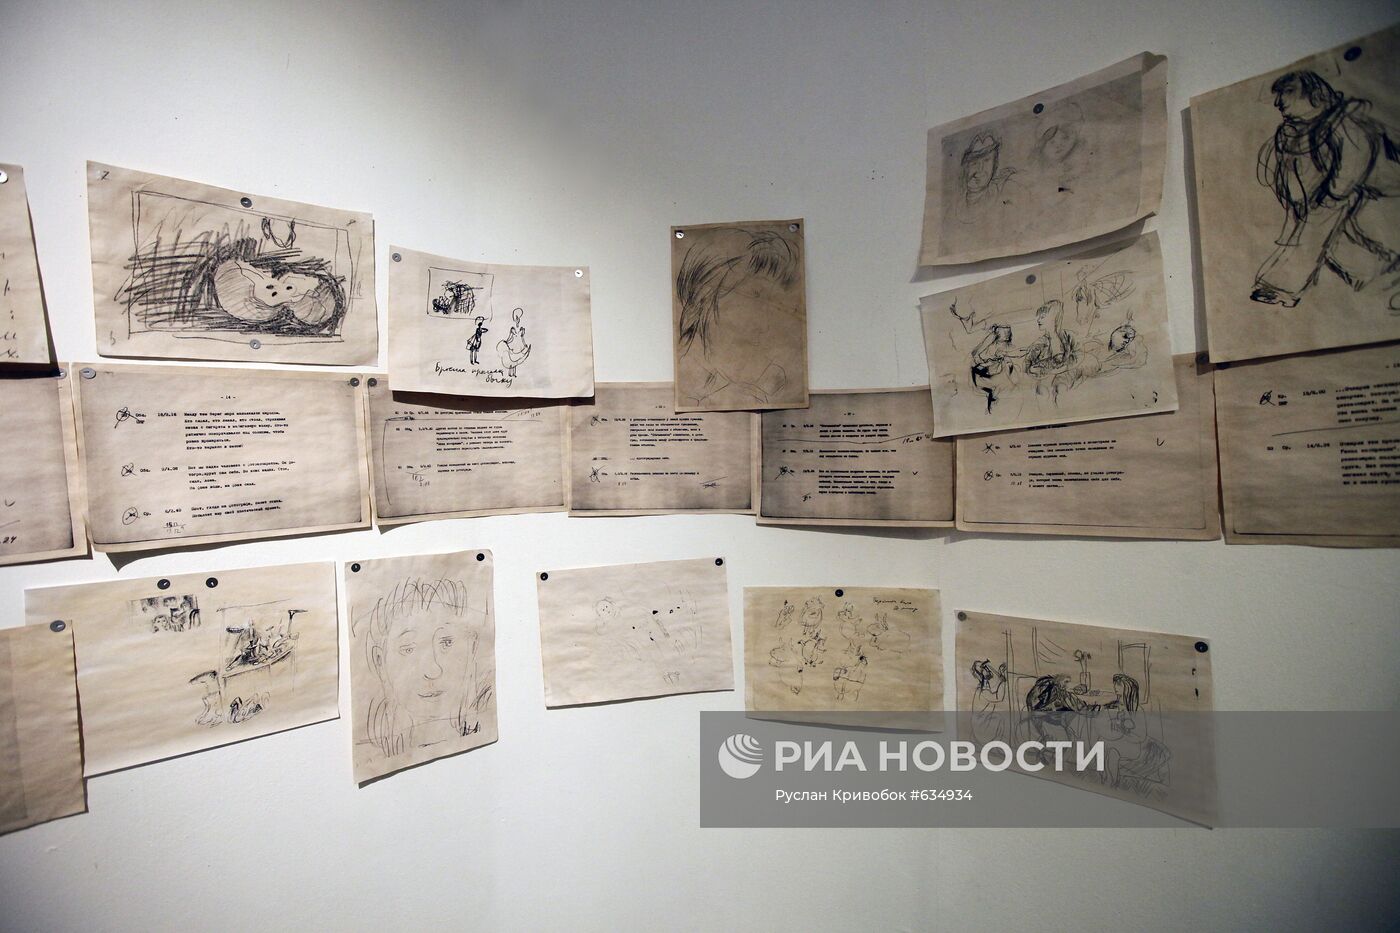 Пресс-показ выставки Юрия Норштейна "Большие глаза войны"